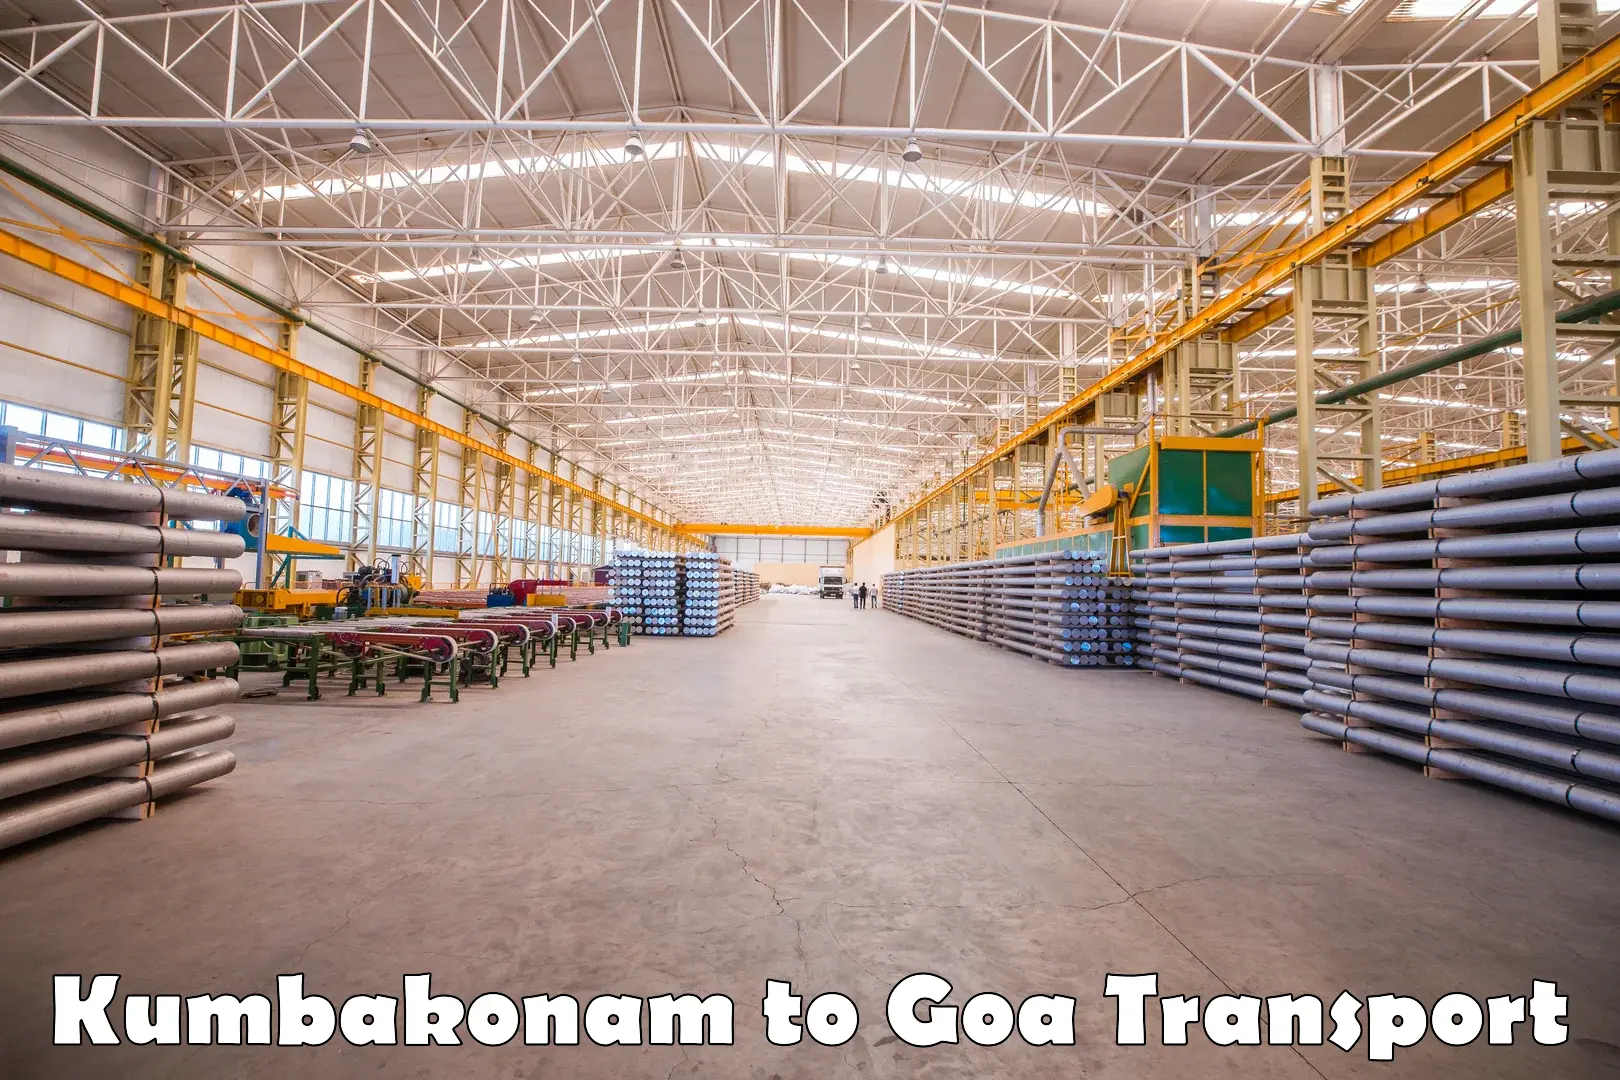 International cargo transportation services Kumbakonam to NIT Goa